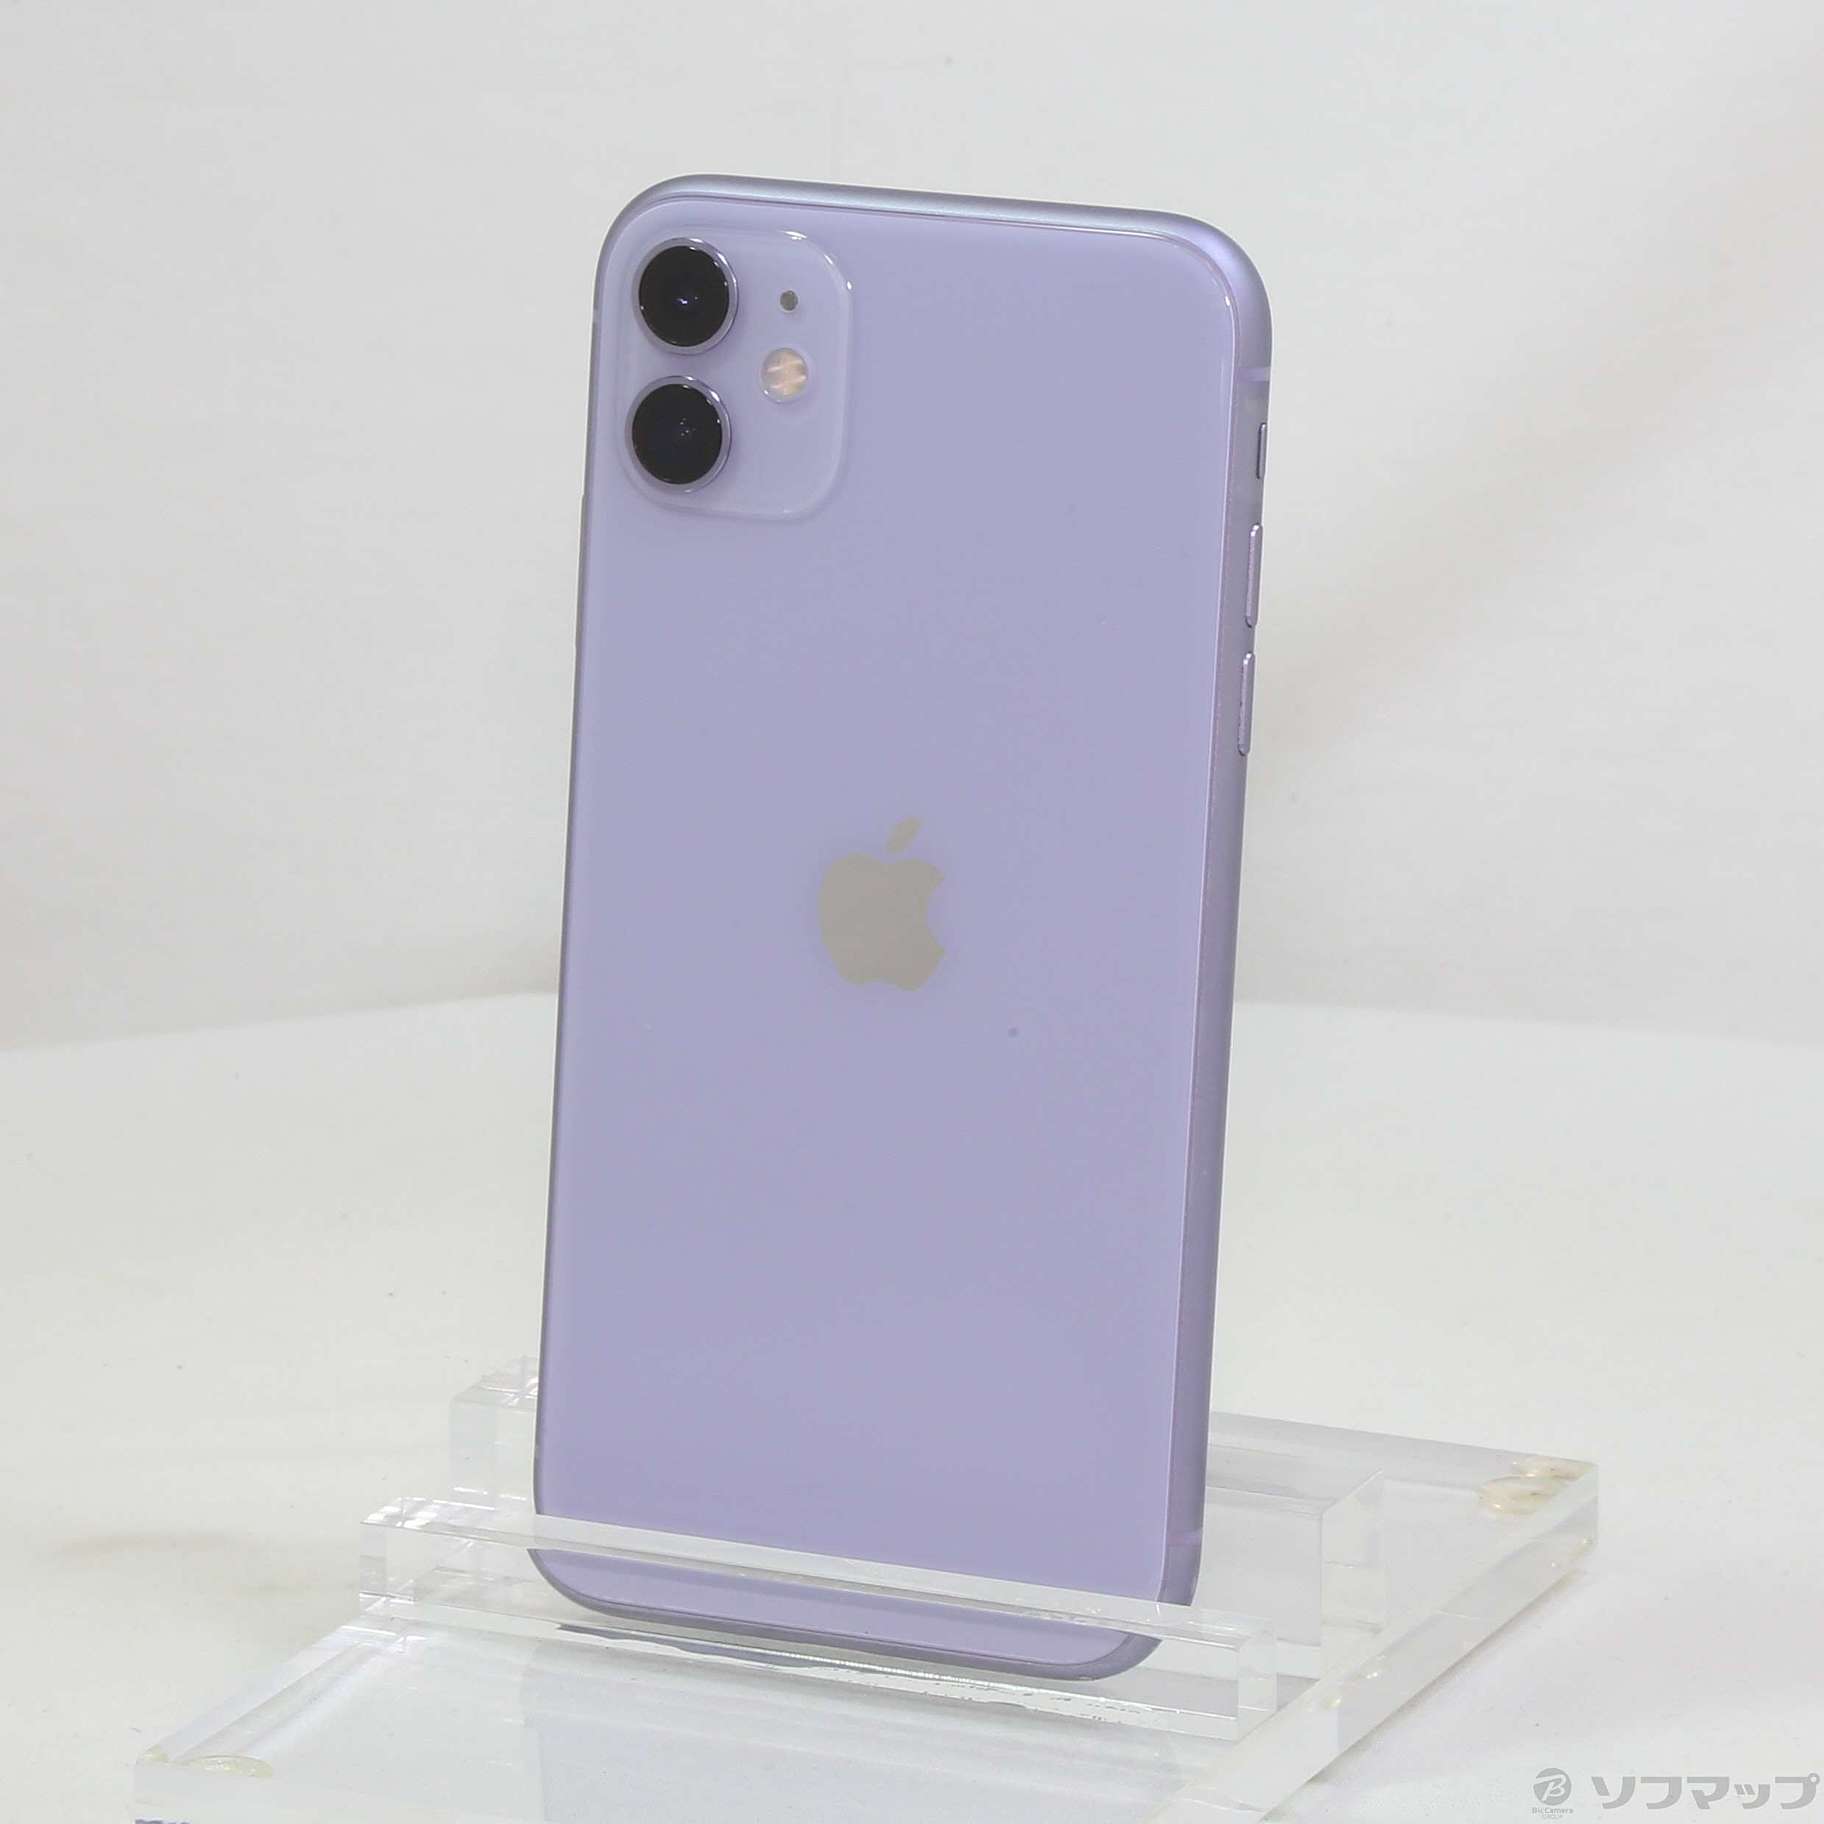 iPhone 11 パープル 64GB SIMフリー美品‼️ - agame.ag